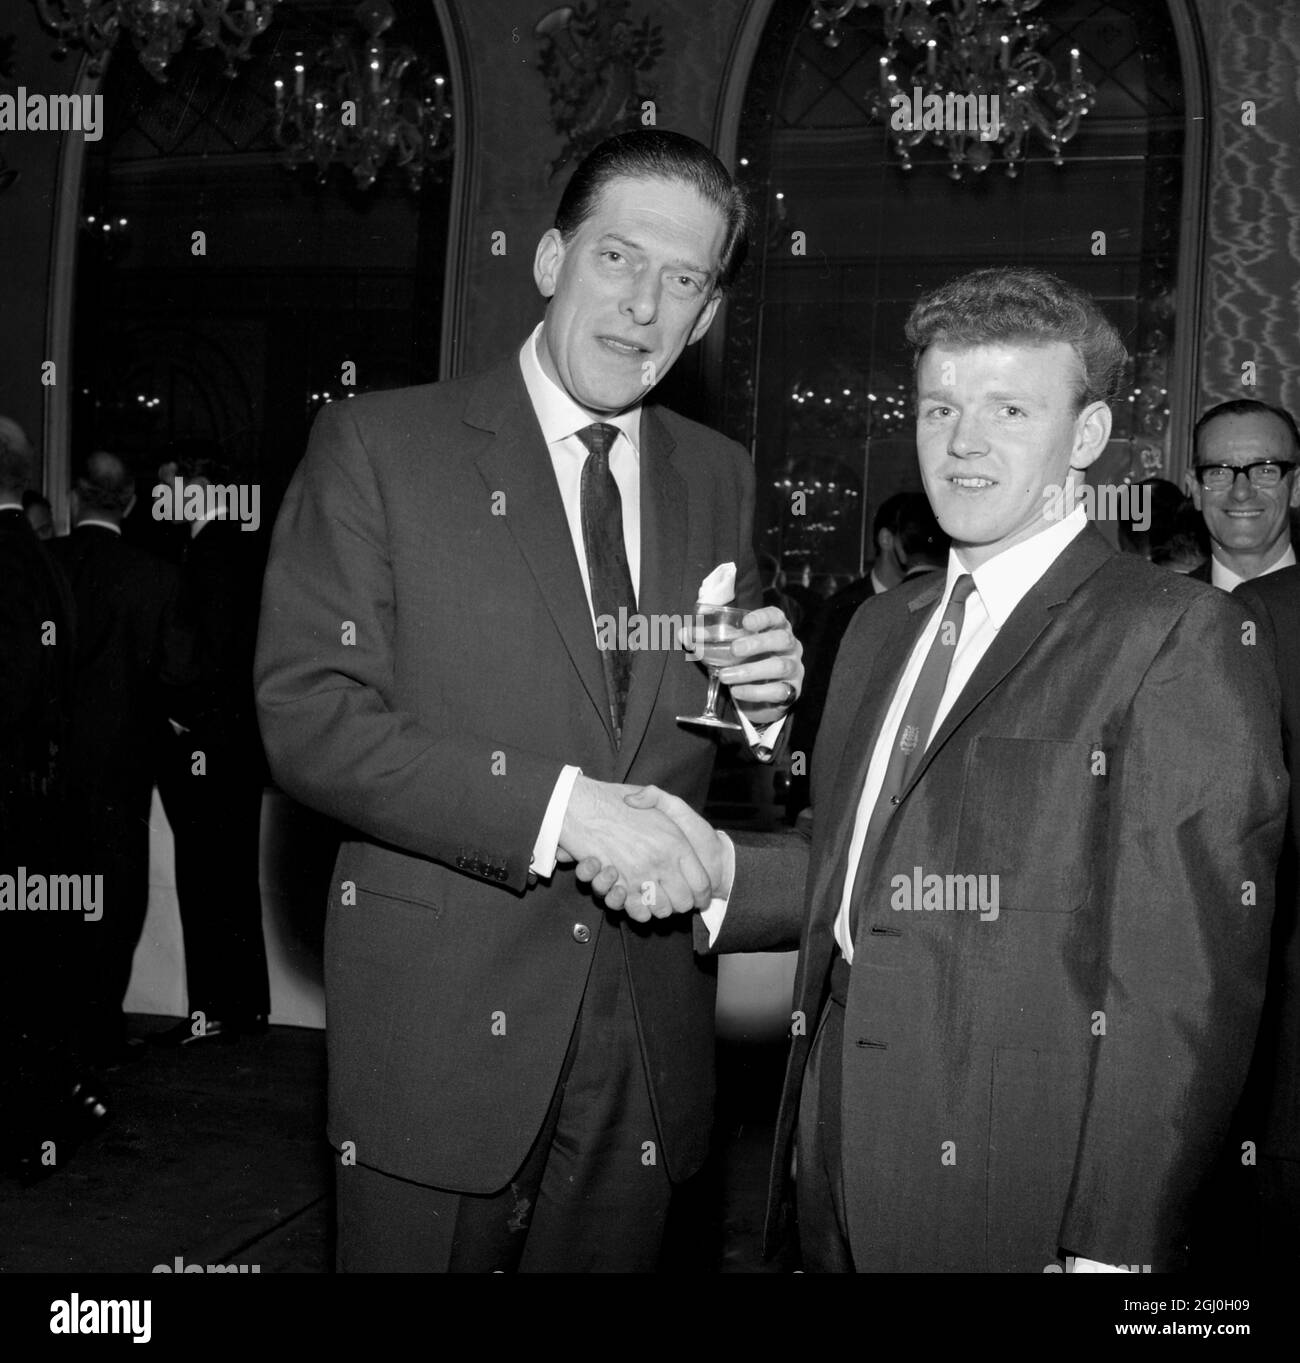 29 Aprile 1965: Cena Football Writer's Associatoin al Cafe Royal. Billy Bremner gioca per la Scozia. Il conte di Harewood, presidente del Leeds United FC, si congratula con Billy Bremner per la sua selezione a giocare per la Scozia. Foto Stock